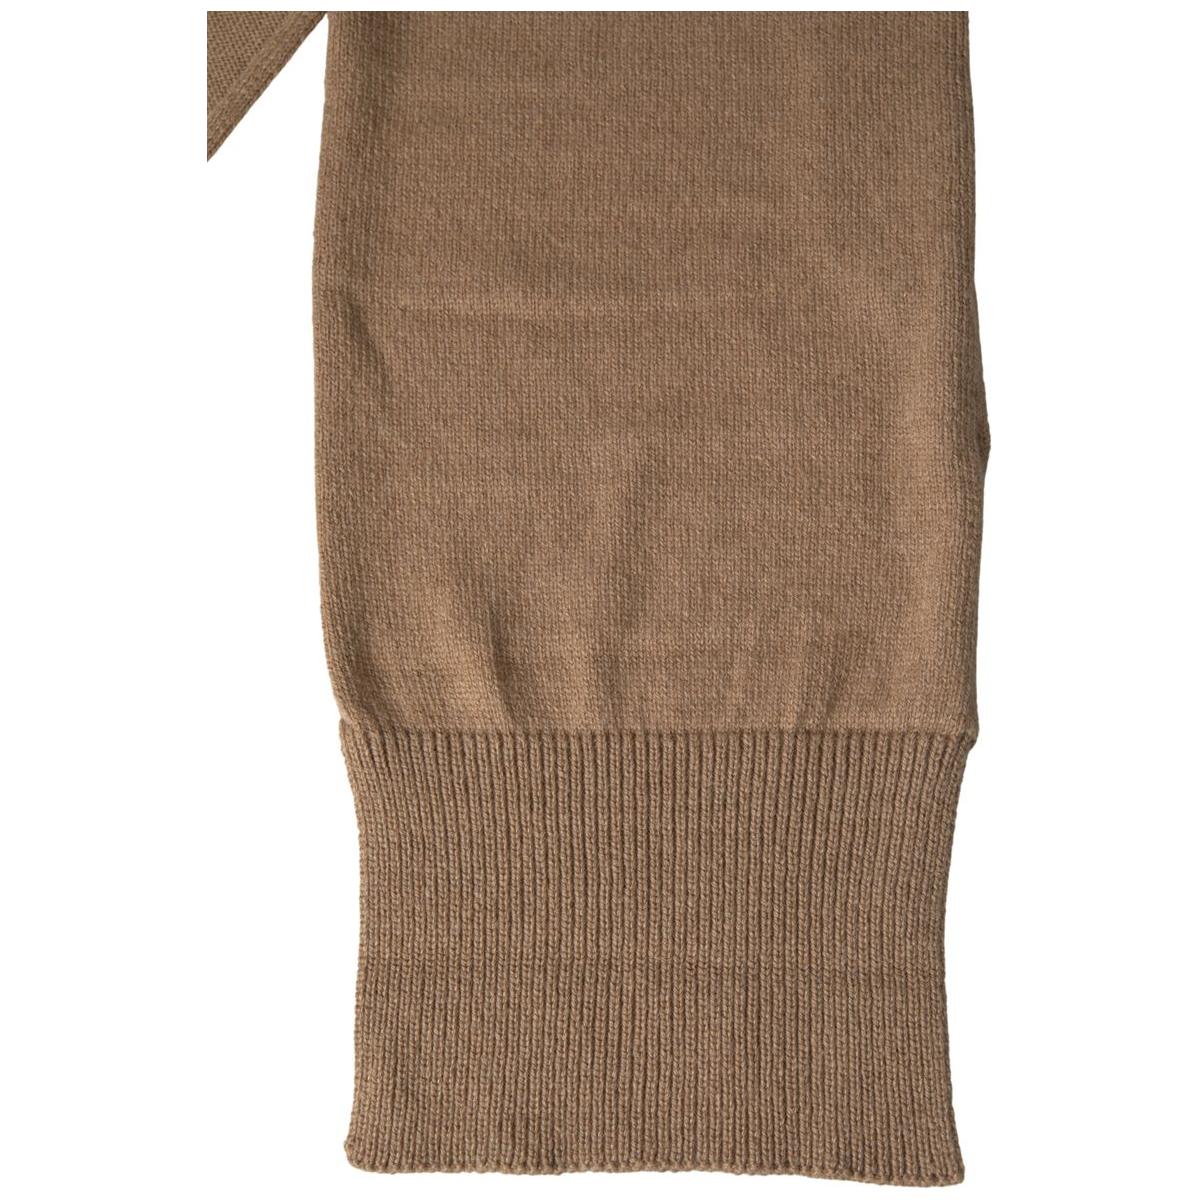 Dolce & Gabbana Elegant Camel-Hued Designer Scarf brown-knitted-camel-wrap-shawl-foulard-scarf 465A3605-f6a29f48-355.jpg